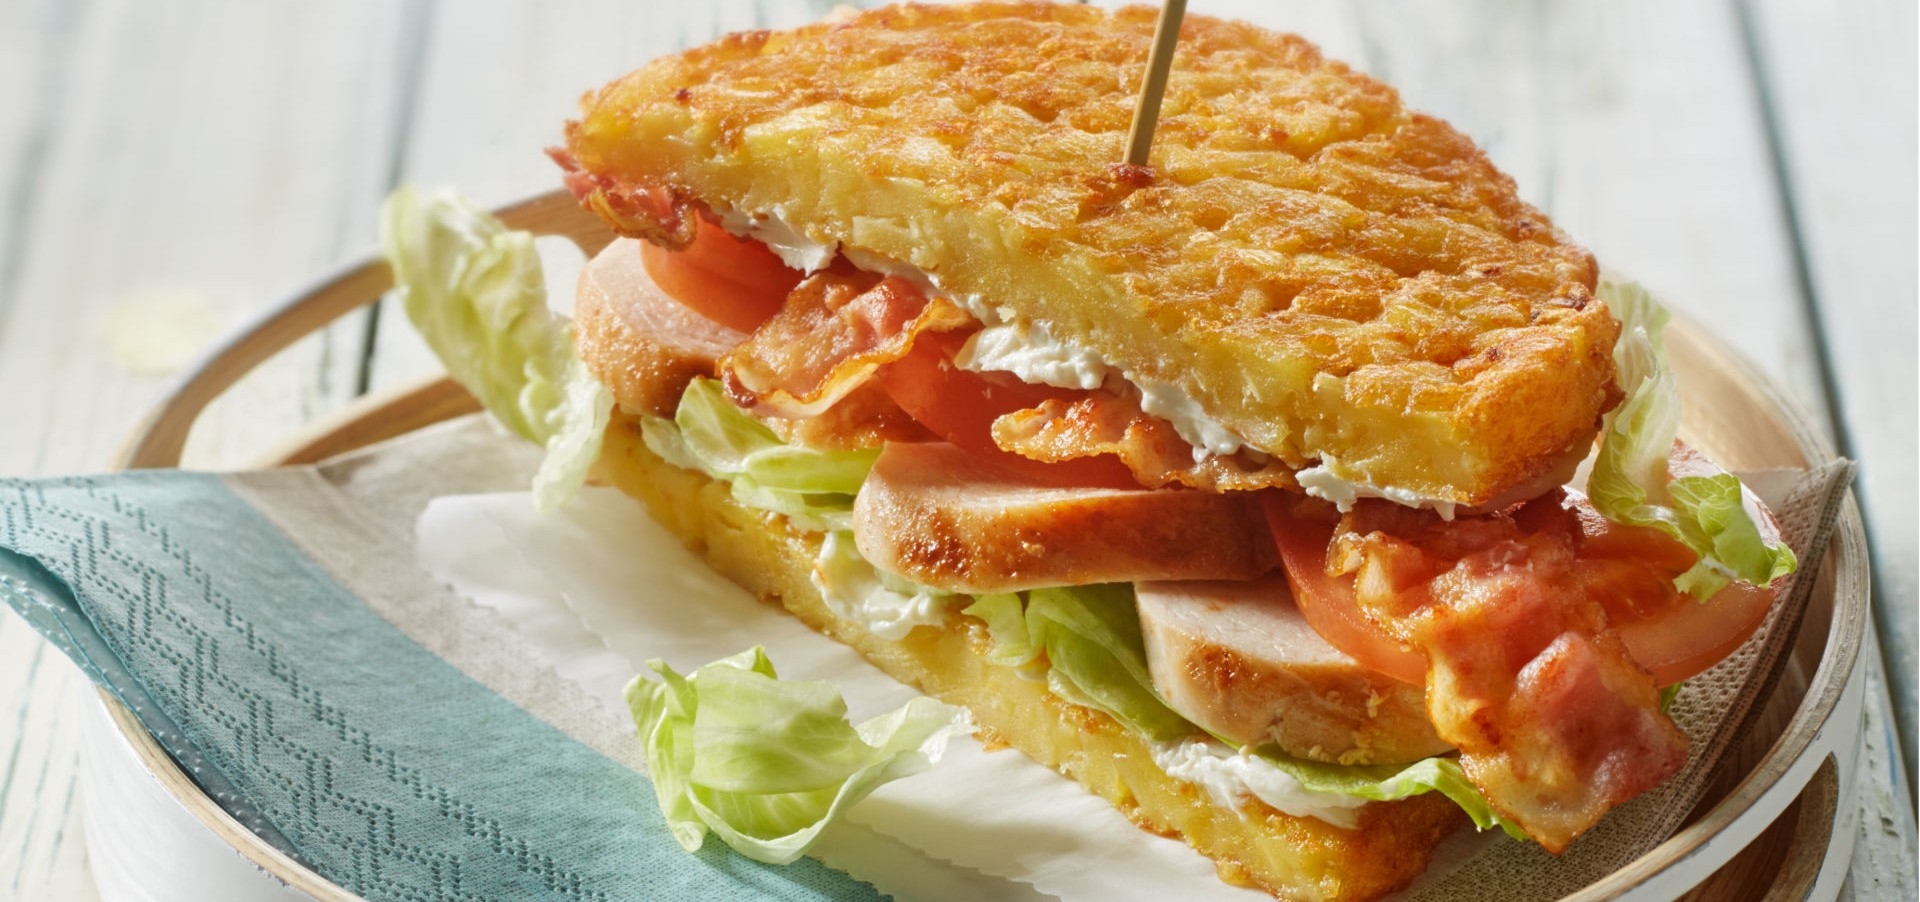 tellerrosti-club-sandwich